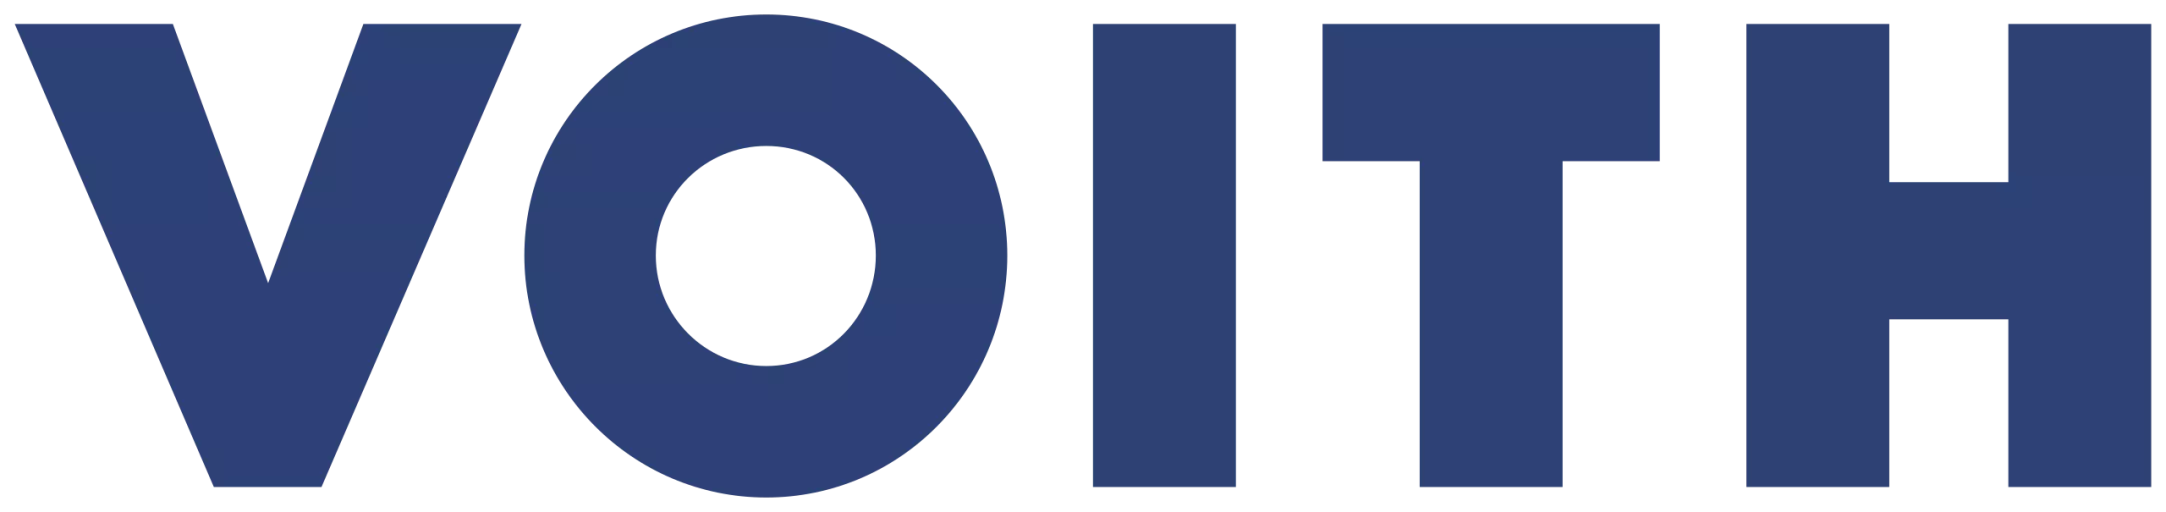 Logo firmy VOITH.